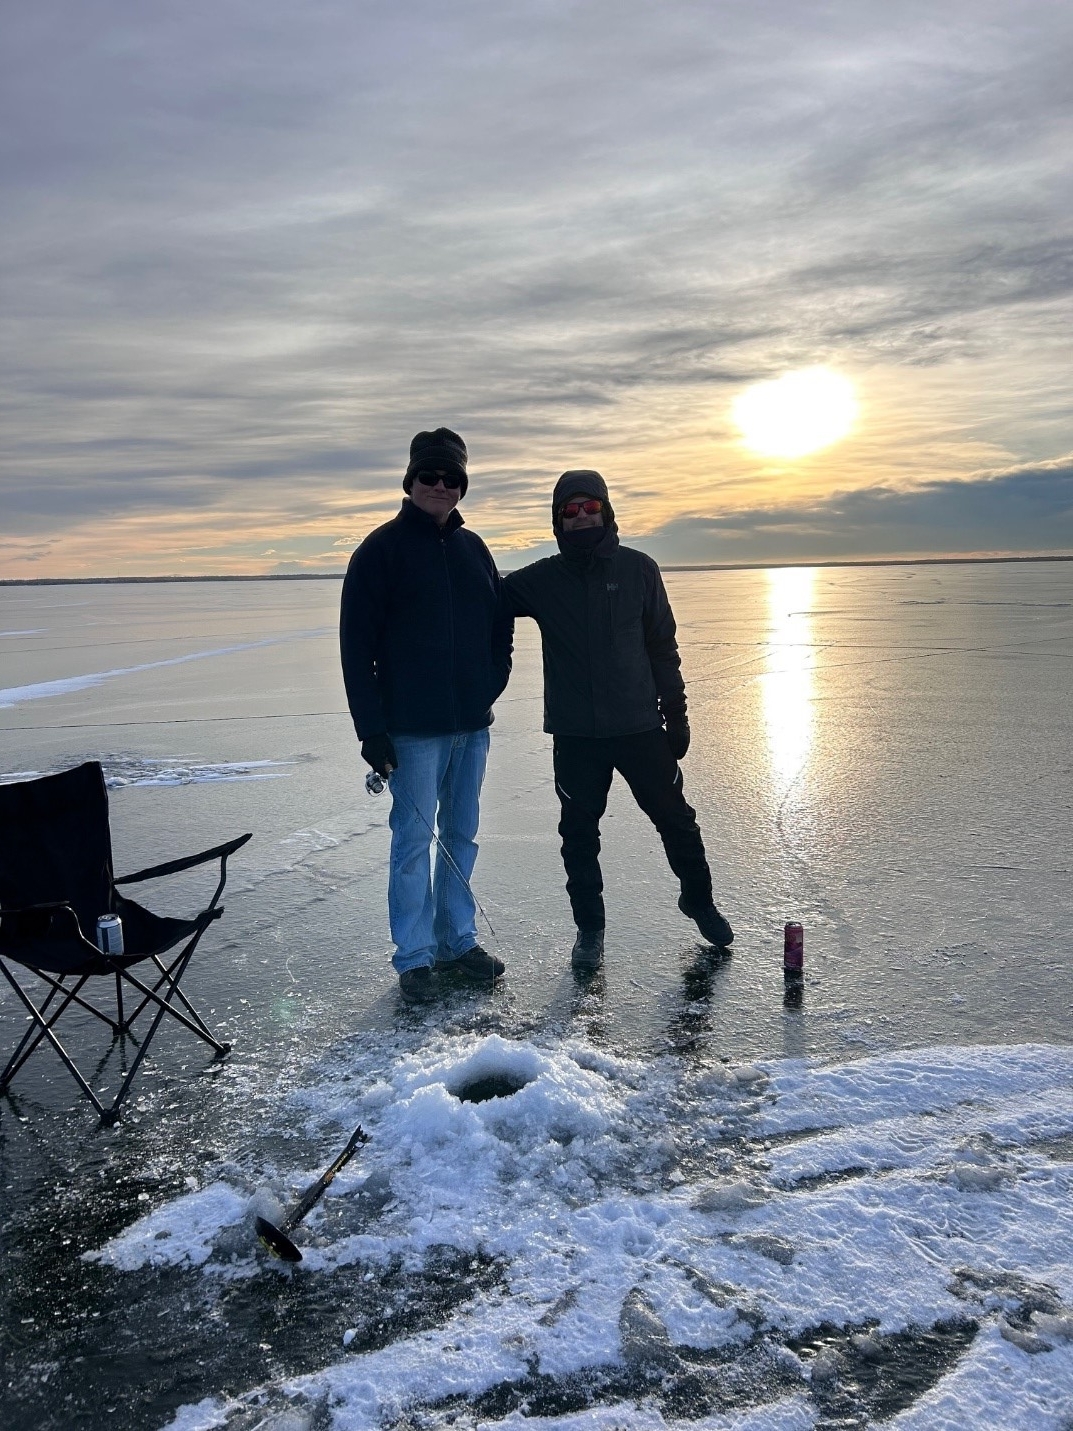 two men ice fishing